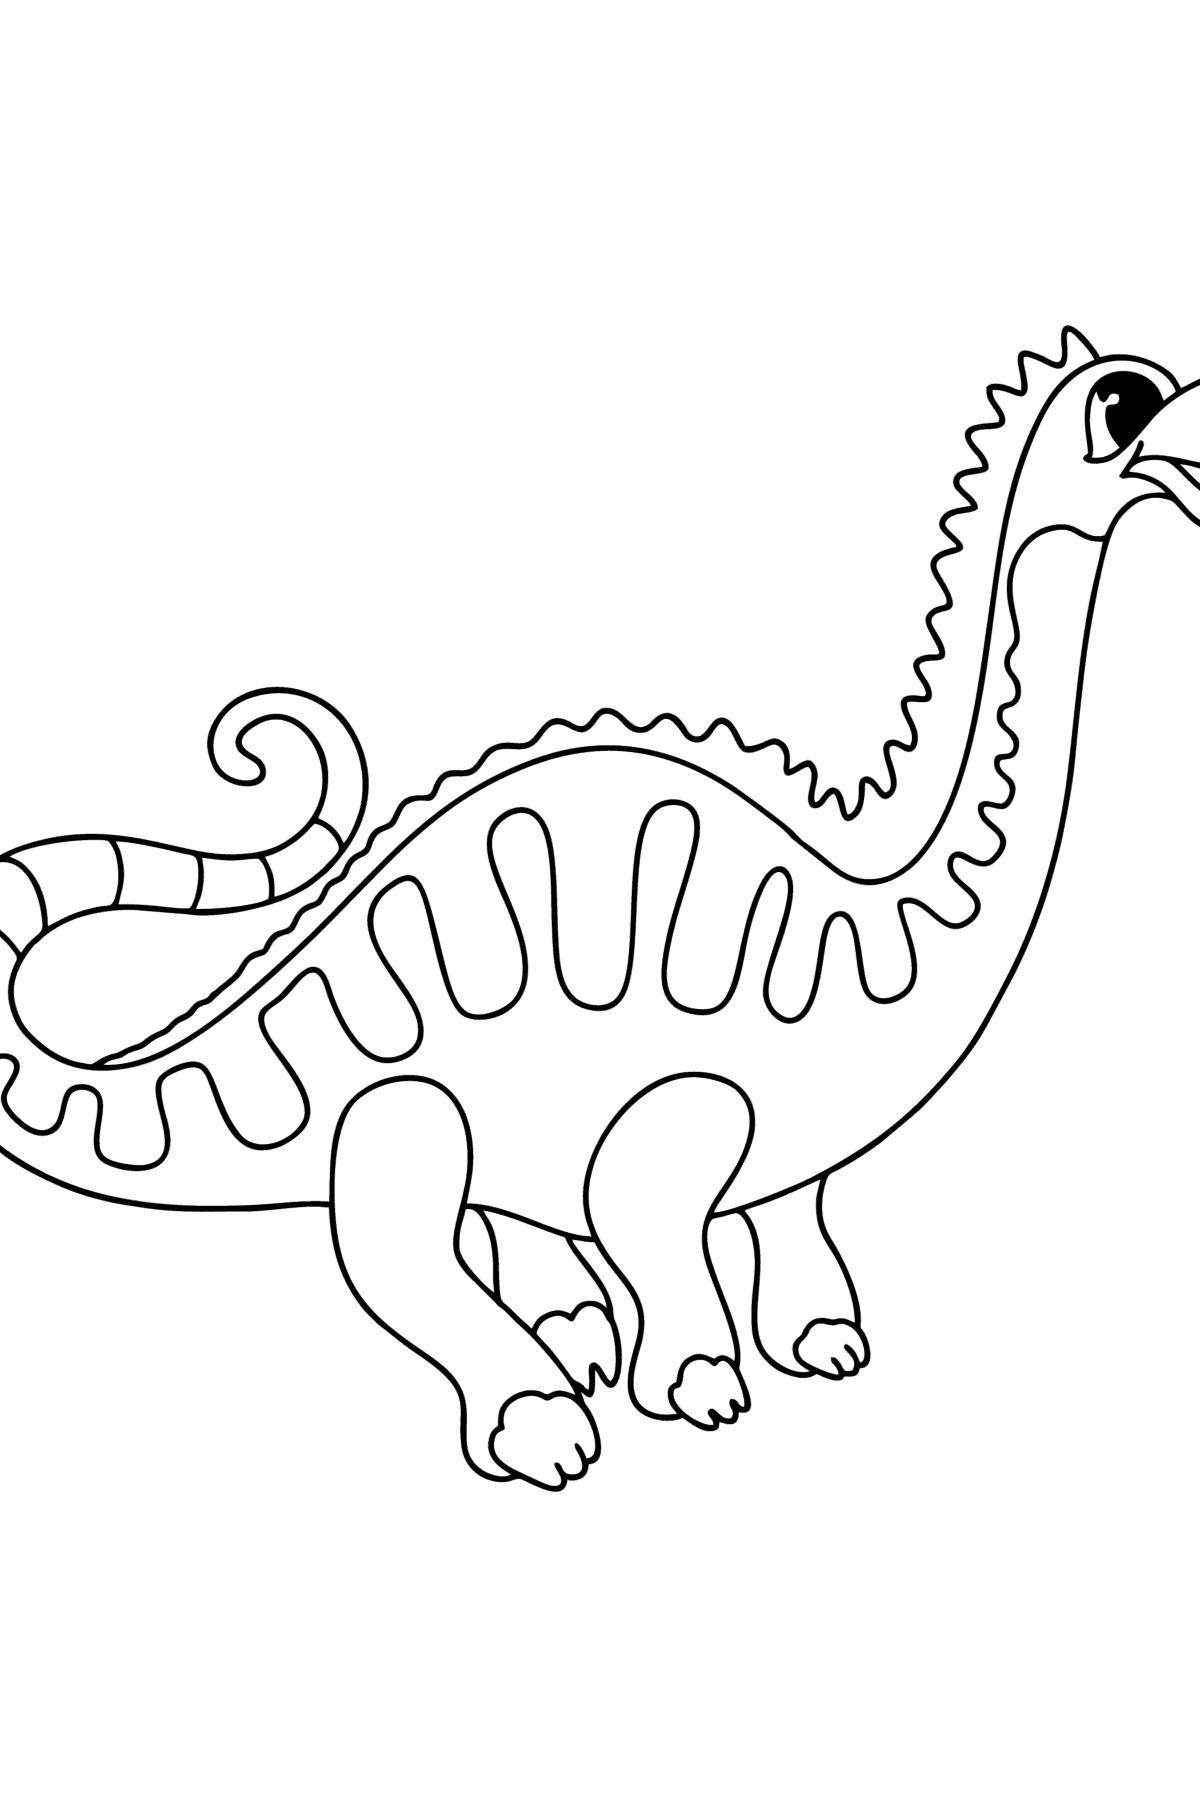 Kleurplaat apatosaurus - kleurplaten voor kinderen